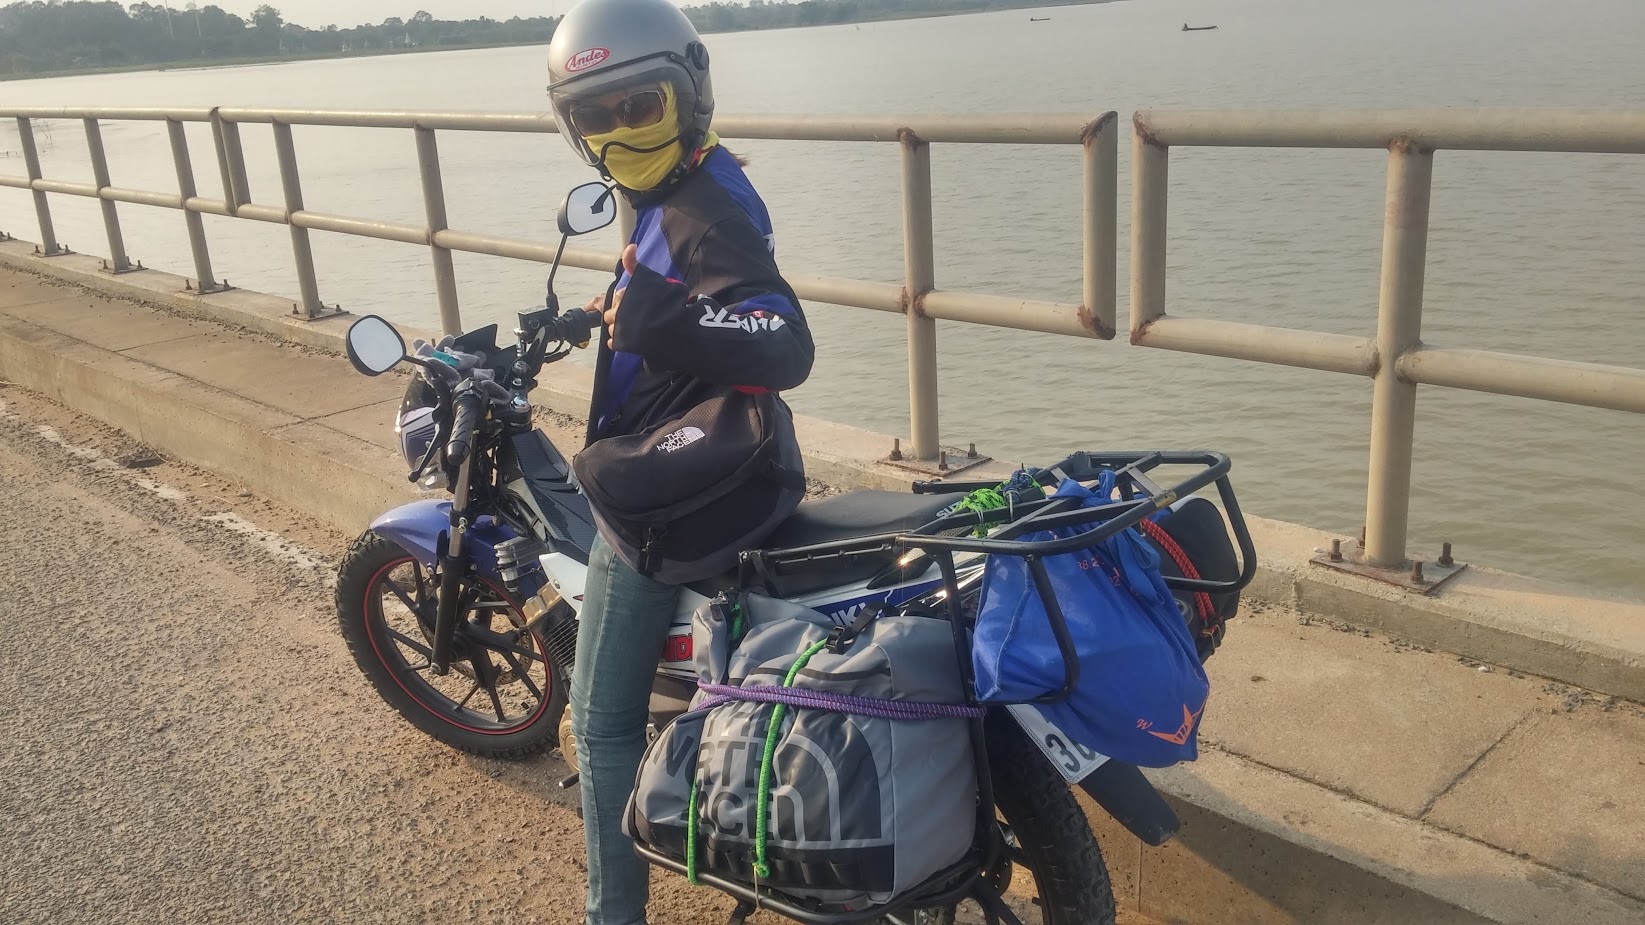 Suzuki Raider customised for Cambodia